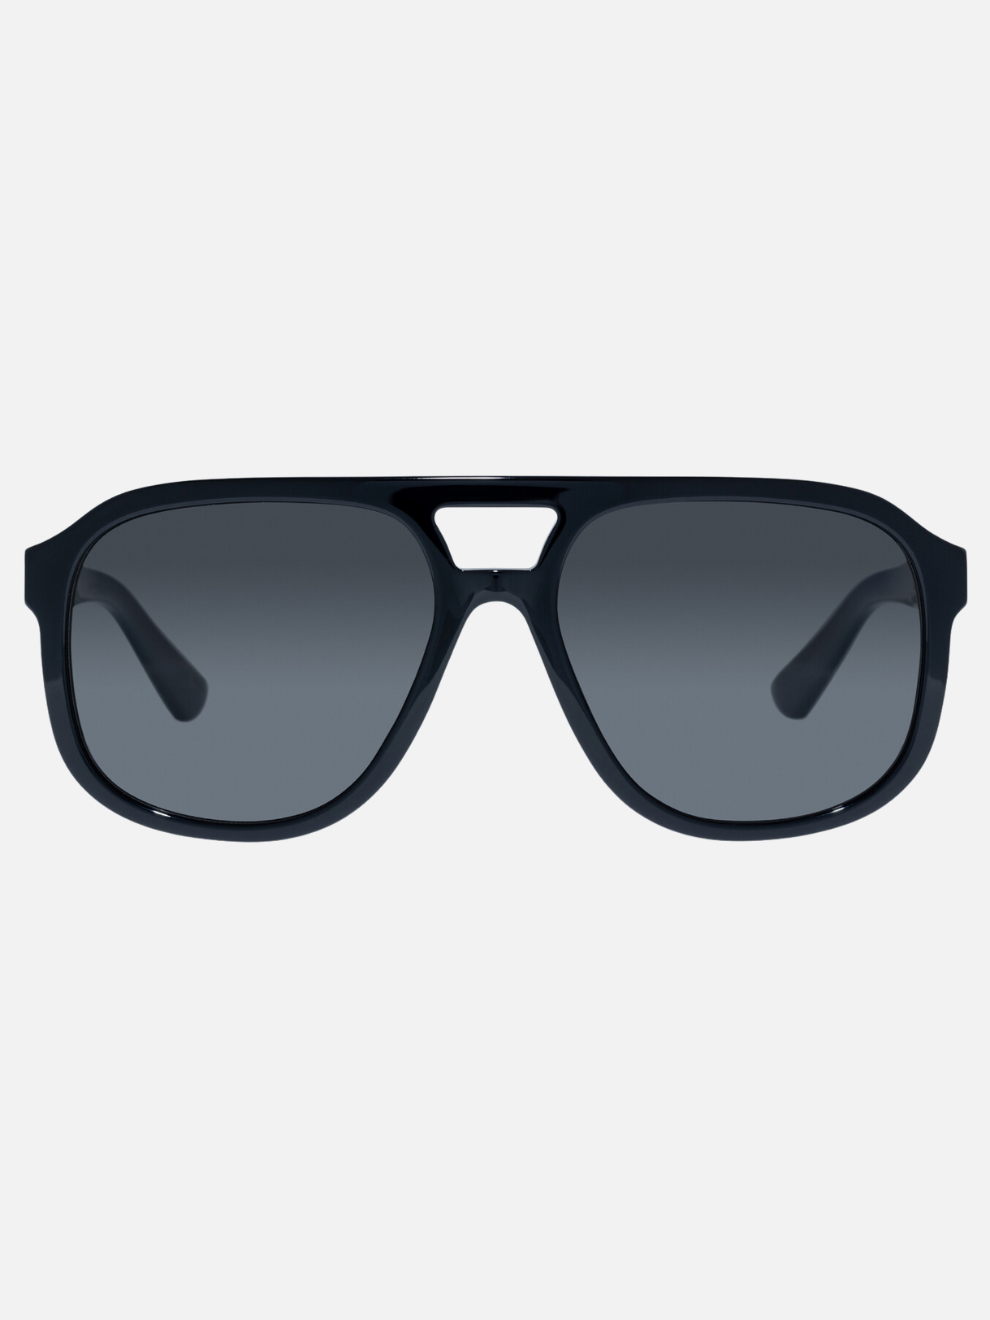 Pilot Sunglasses in Black